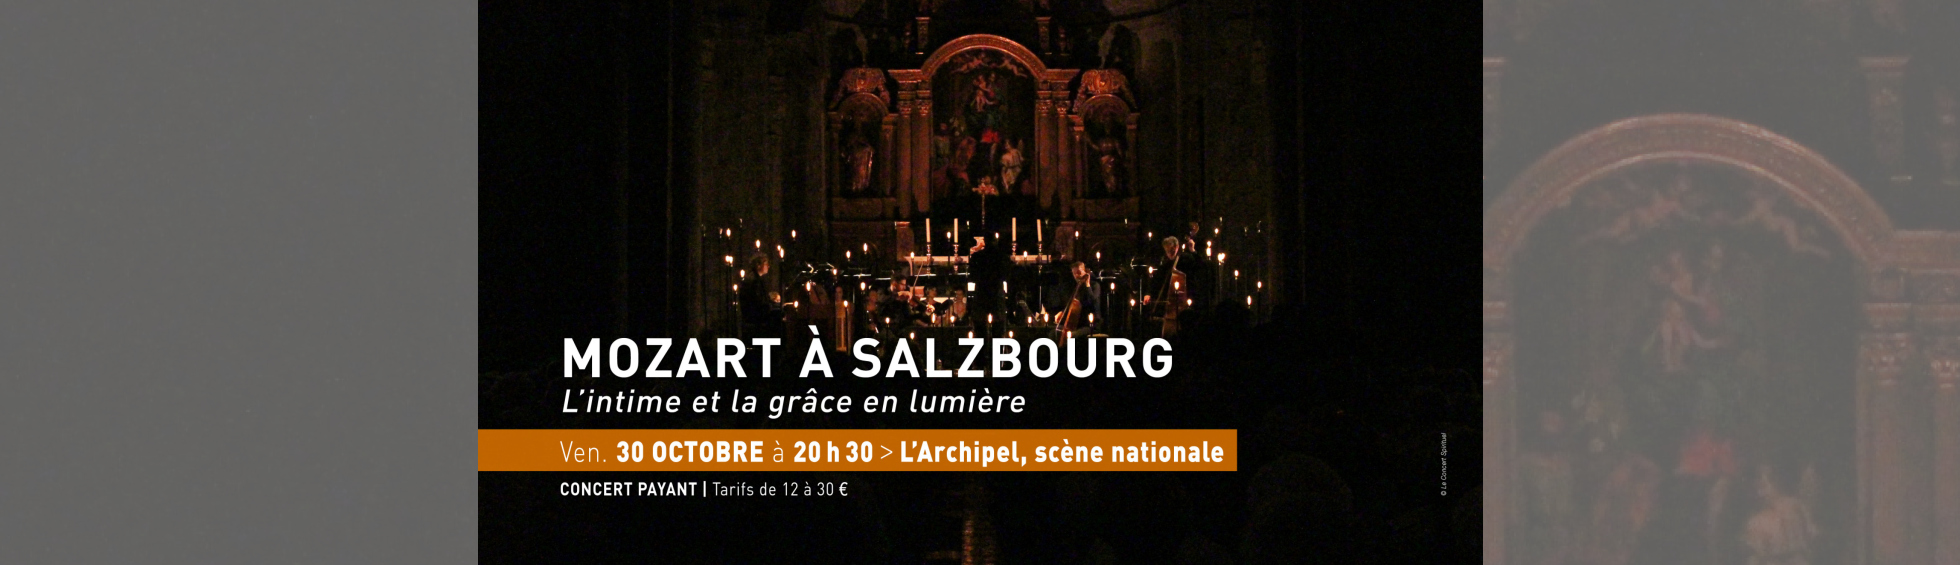 30 OCTOBRE - MOZART A SALZBOURG - Le Concert Spirituel